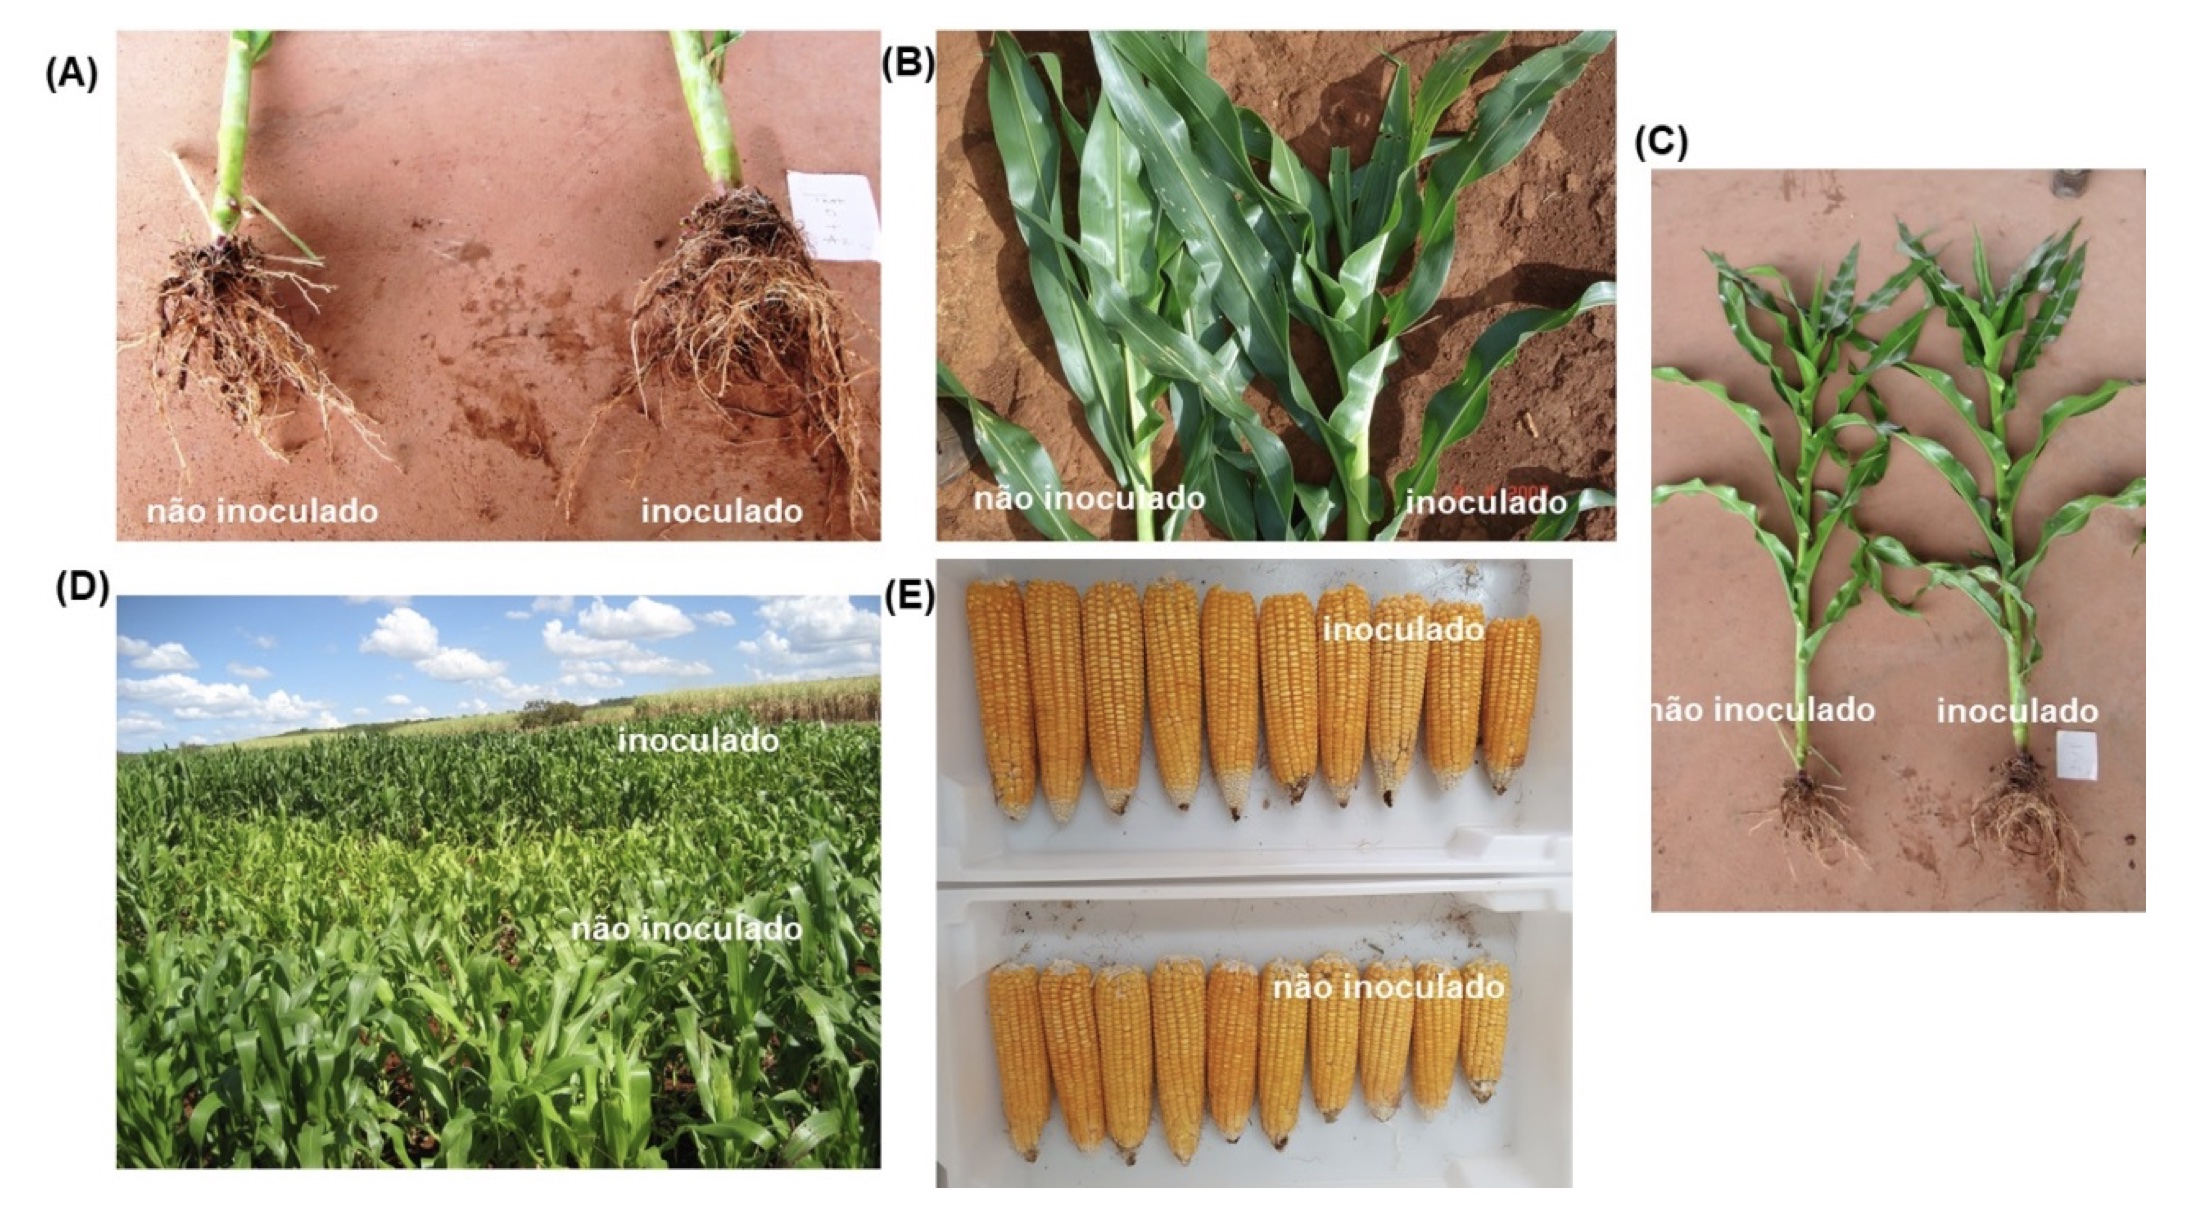 Efeitos da inoculação com as estirpes Ab-V5 e Ab-V6 de Azospirillum brasilense no (A) crescimento das raízes; (B) teor de clorofila; (C) altura das plantas; (D) nutrição nitrogenada; (E) uniformidade das espigas de milho — Fotos A, B e C: Total Biotecnologia; (D) Fábio Bueno dos Reis Junior; (E) os autores